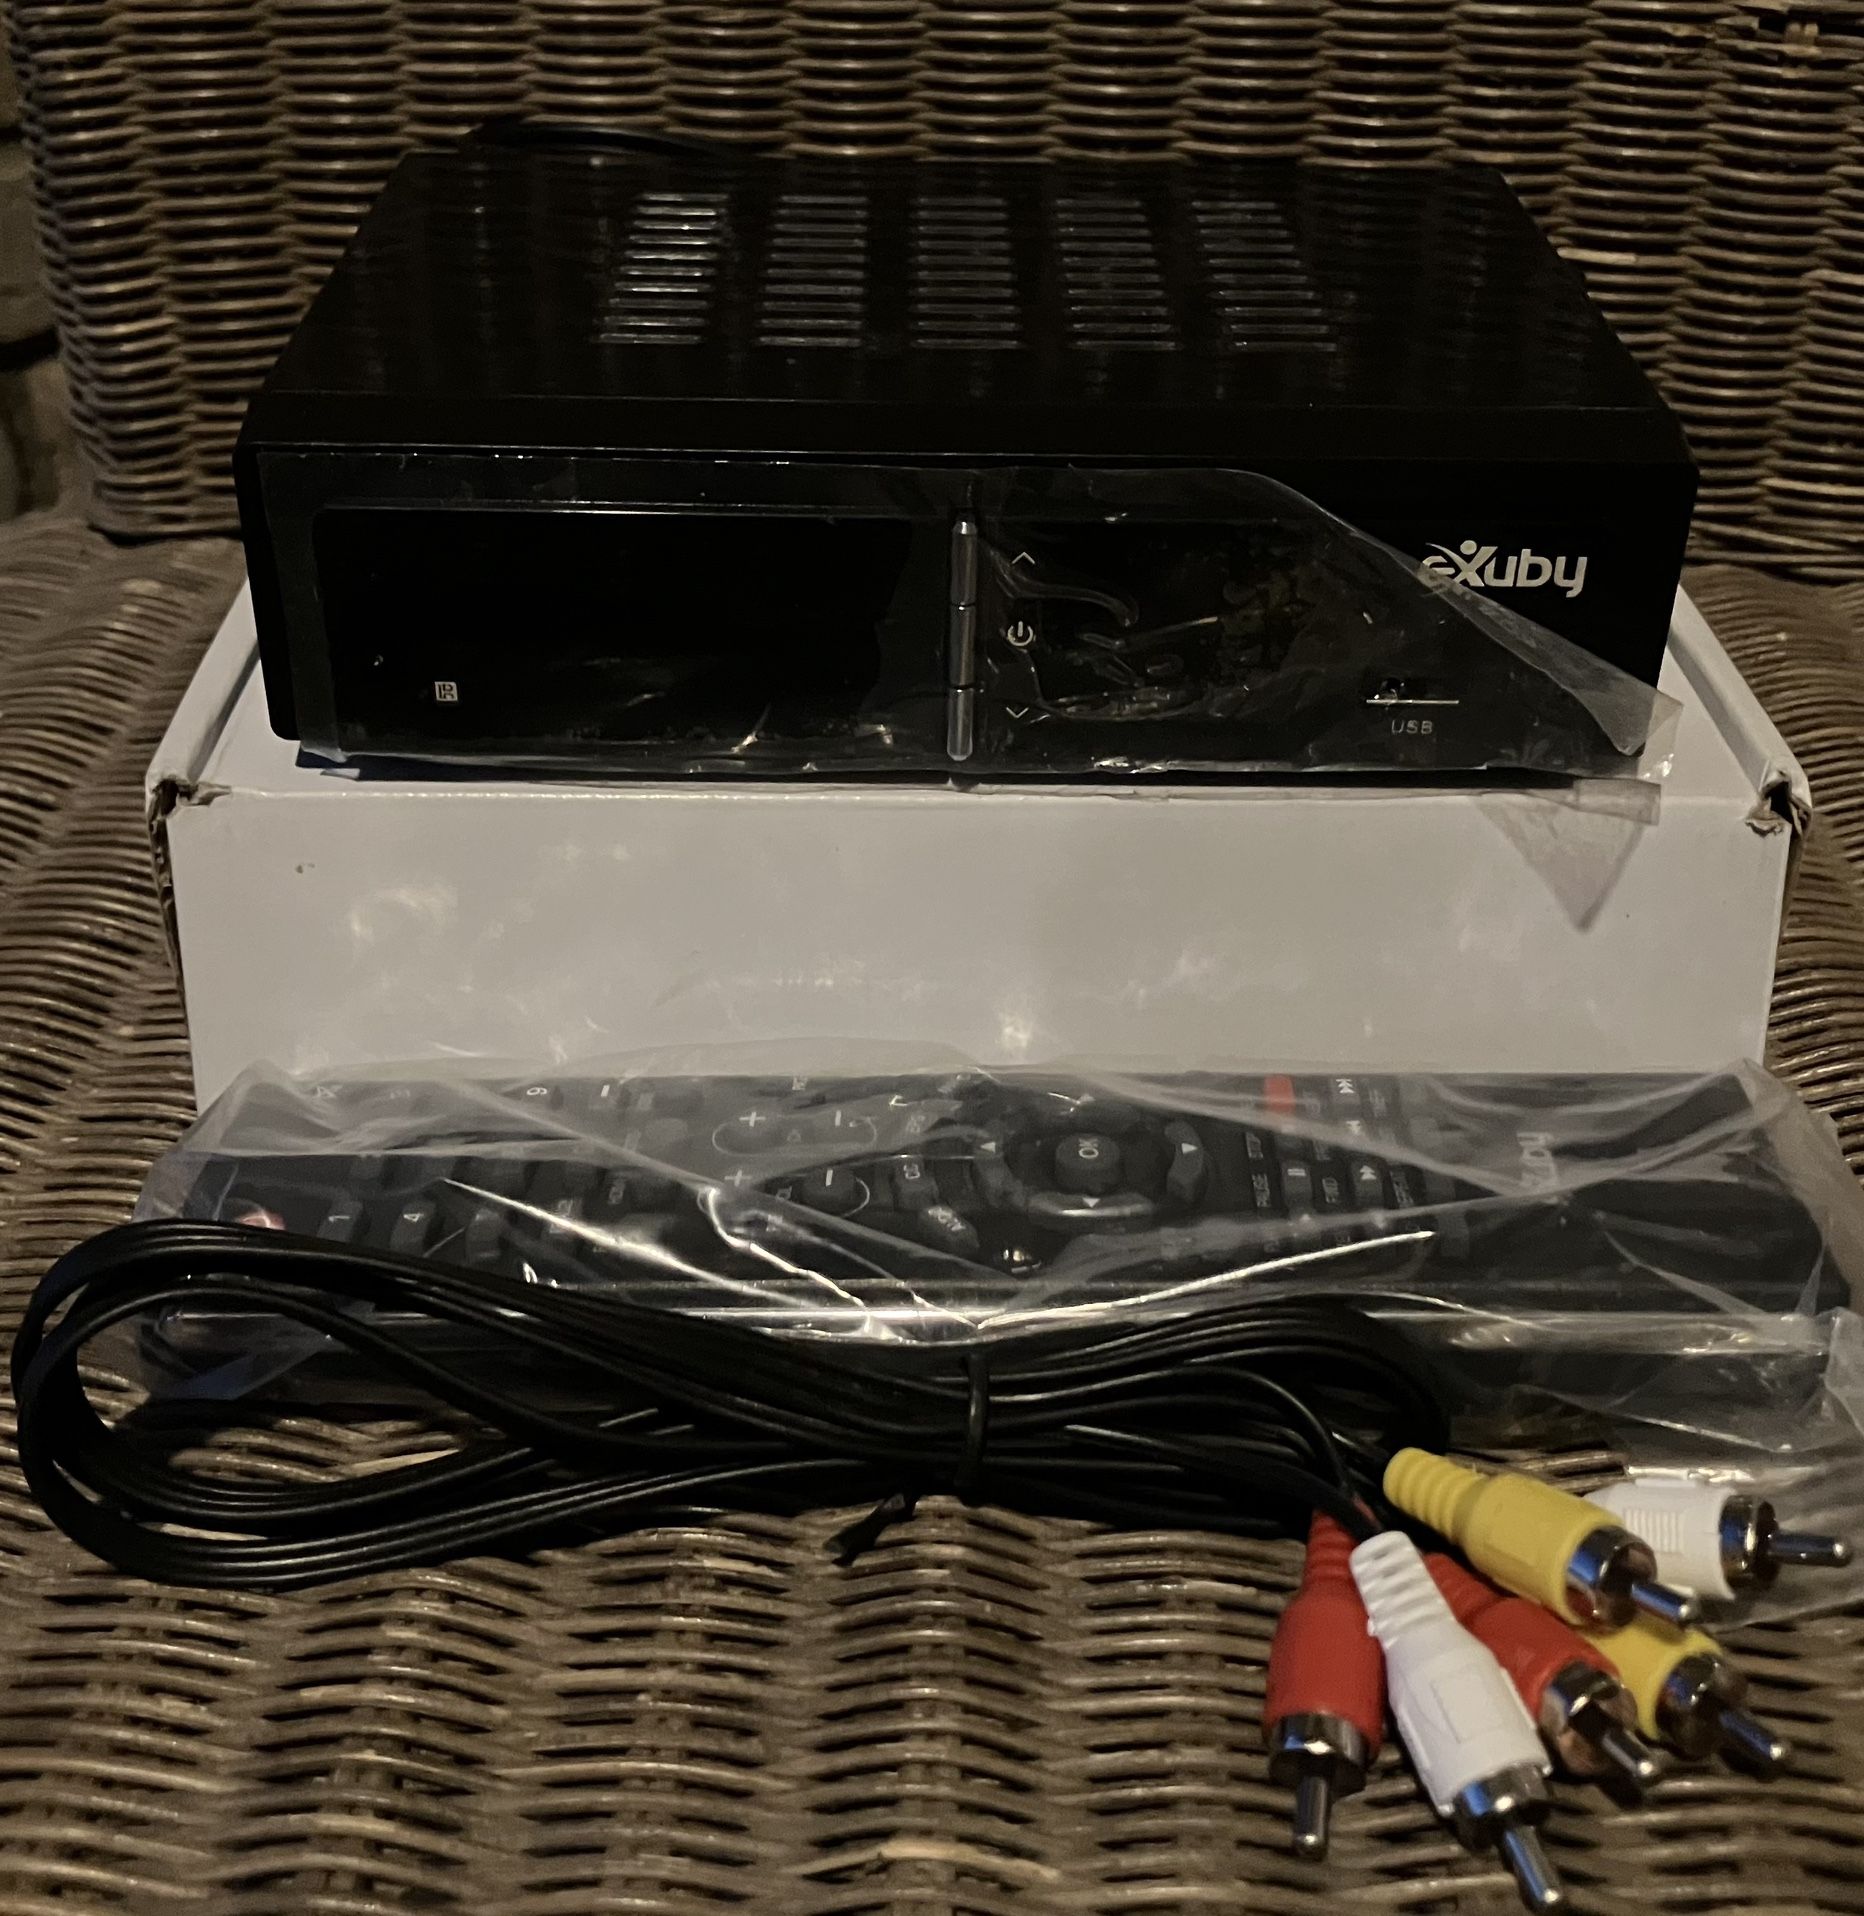 eXuby Digital TV Converter Box